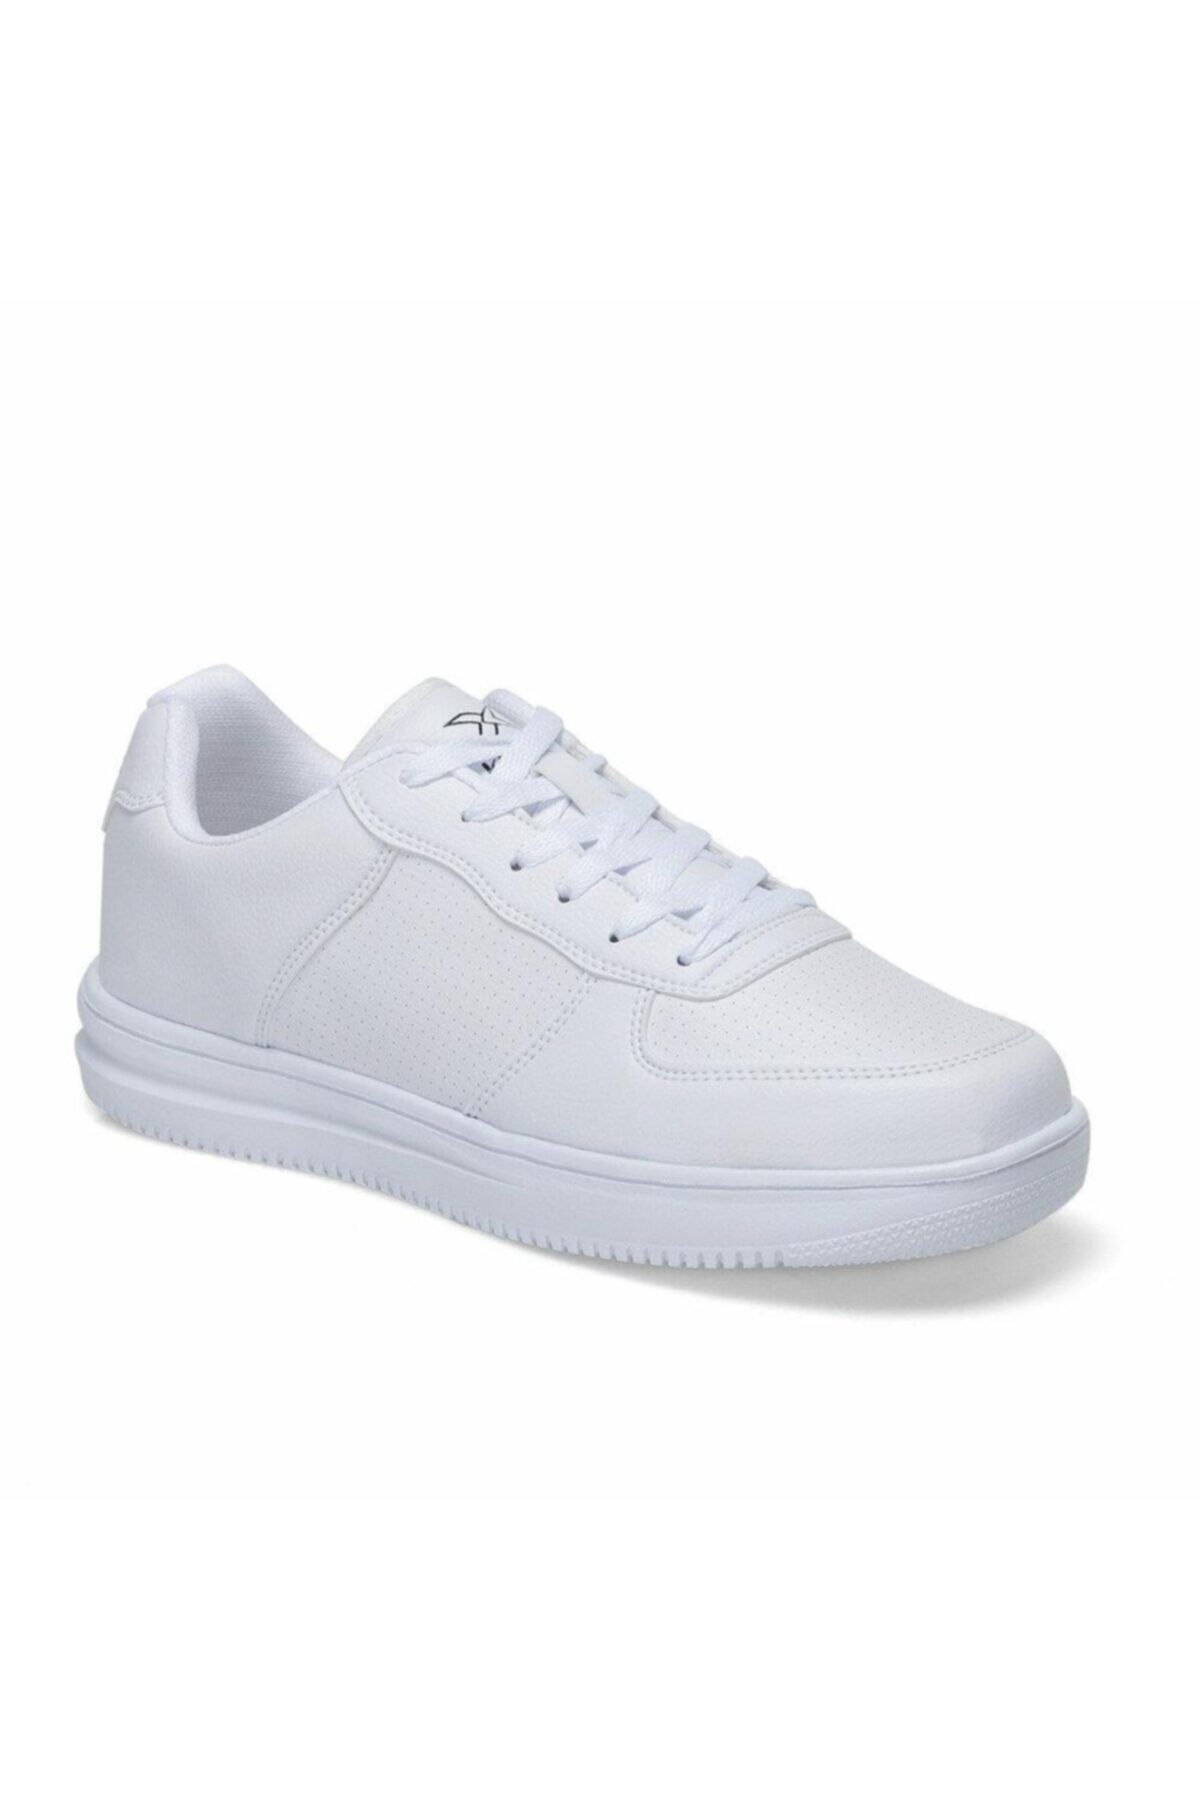 Kinetix ABELLA W 1FX Beyaz Kadın Sneaker Ayakkabı 100781402